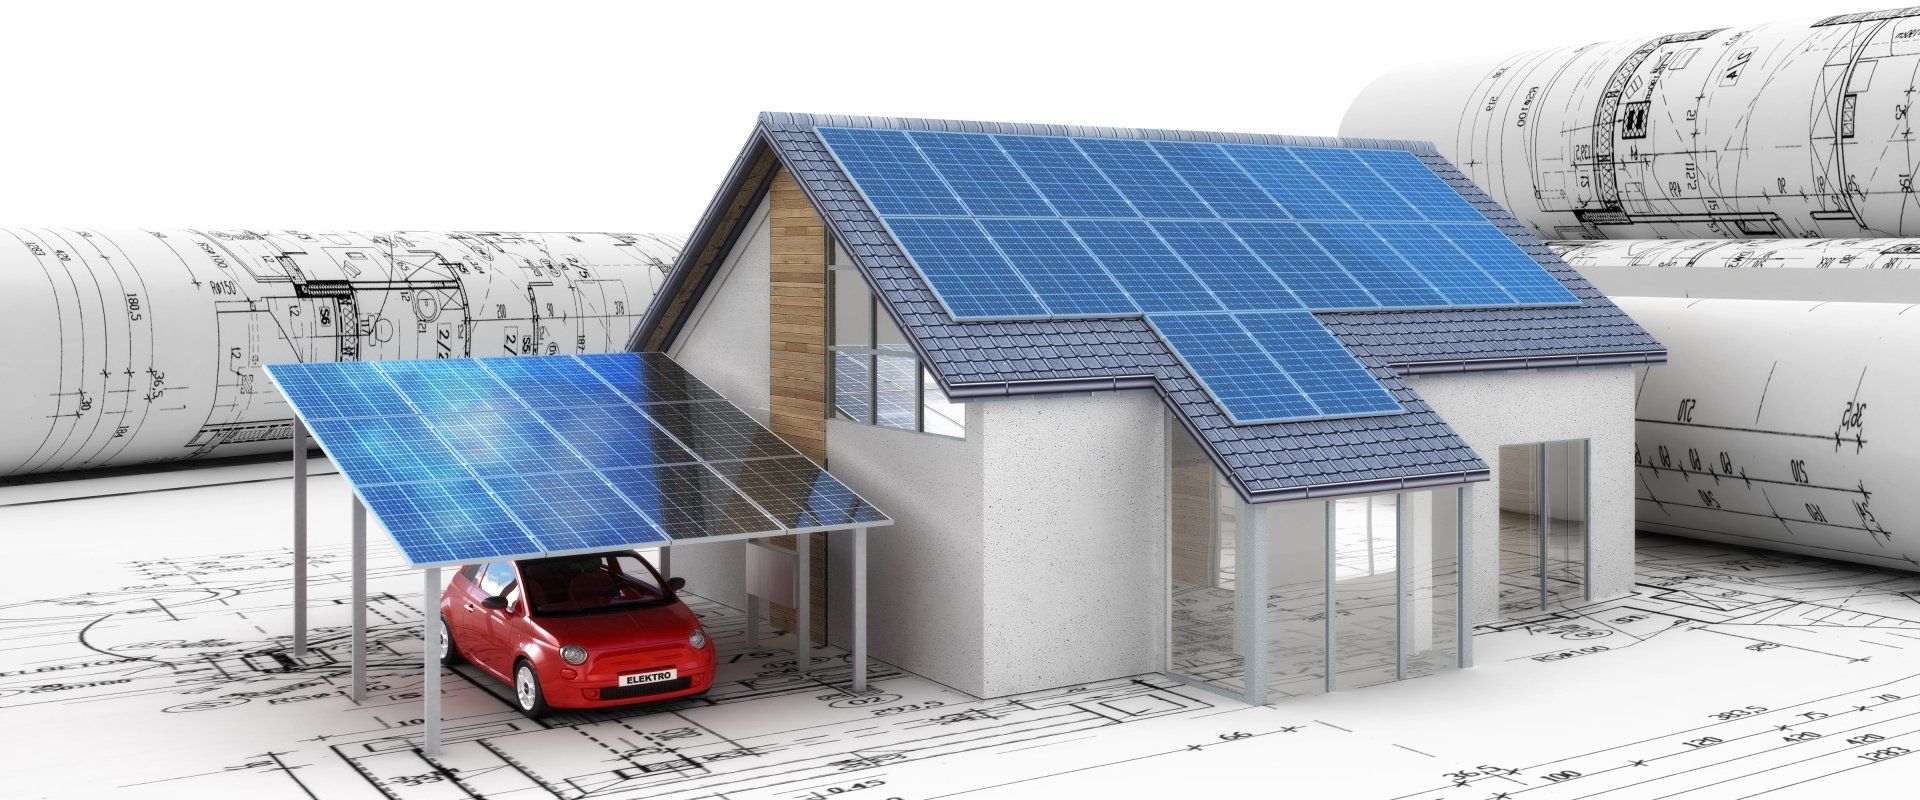 Solaranlagen Photovoltaik Eigenheim